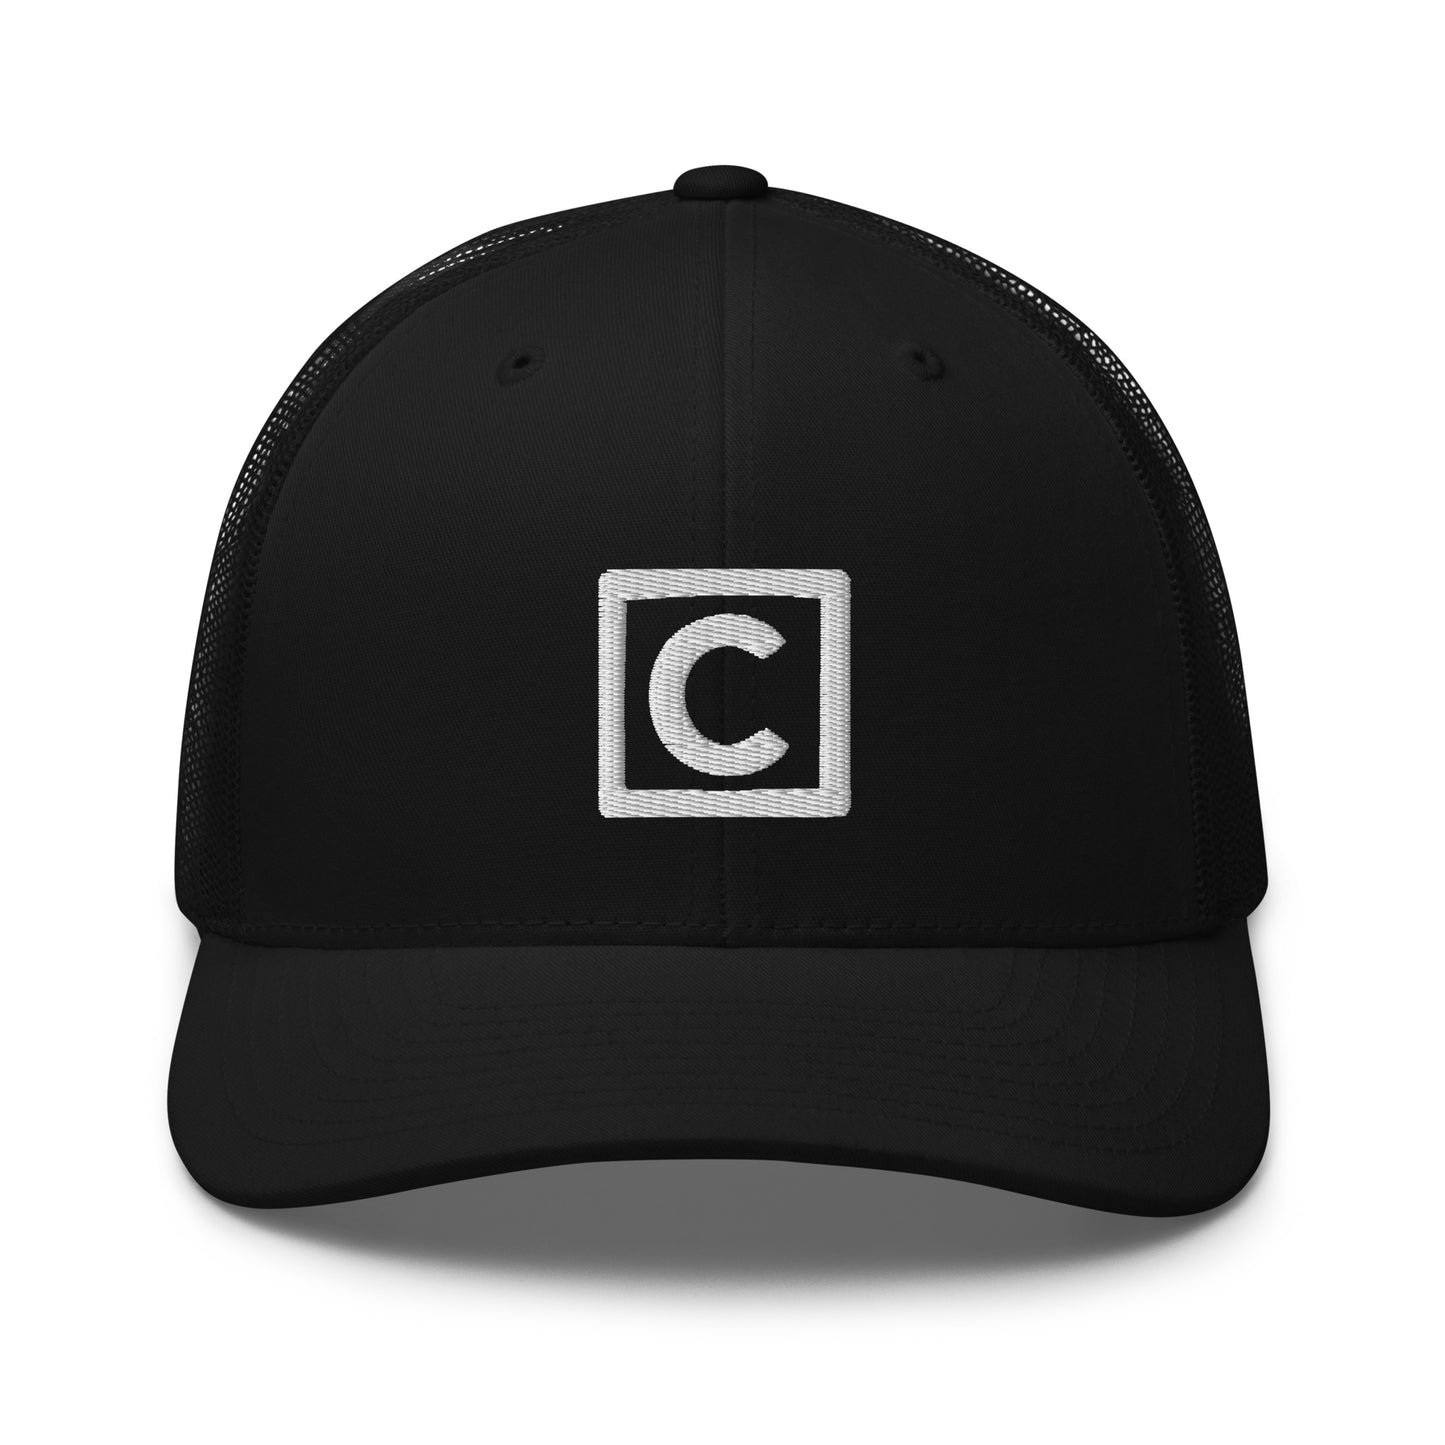 City C - Trucker Cap